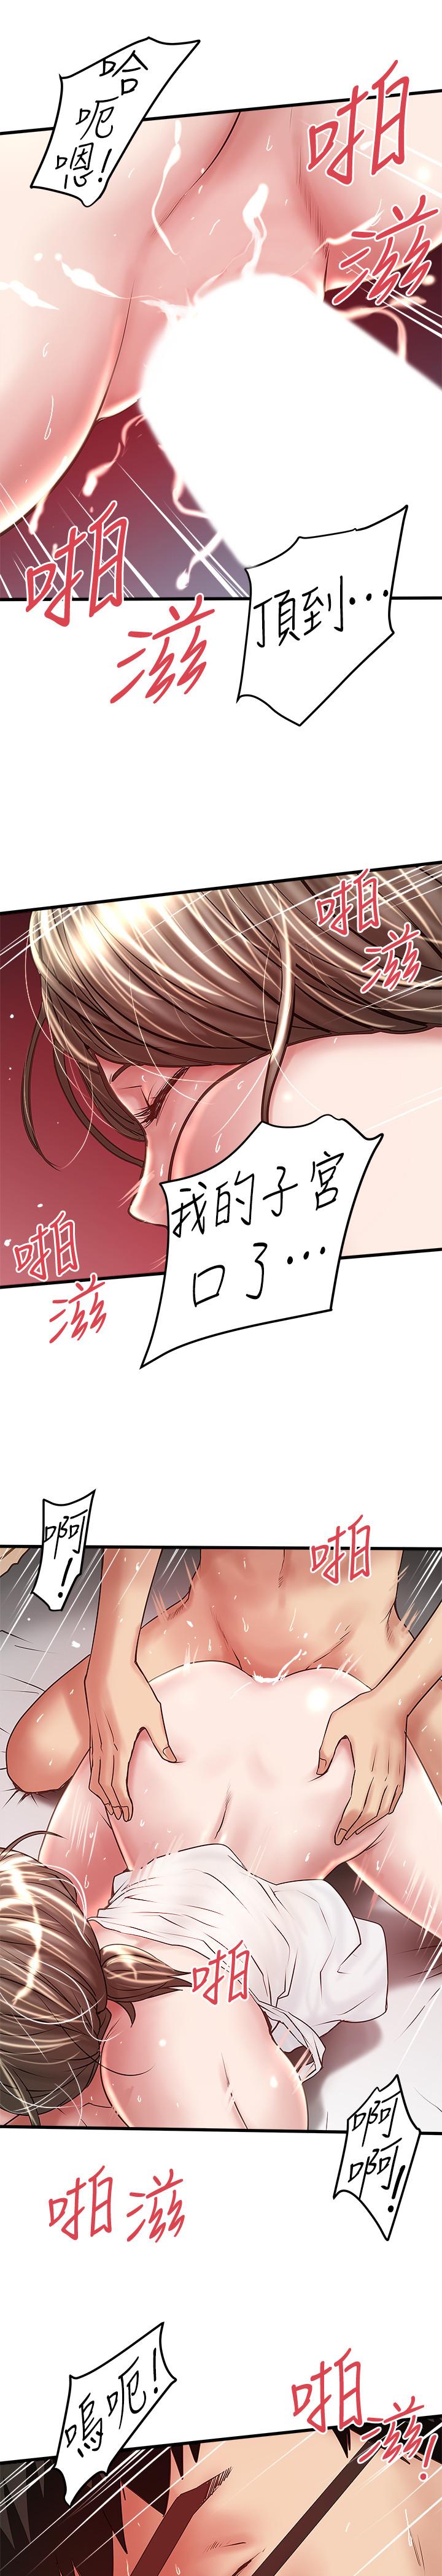 韩国污漫画 下女,初希 第54话-初希不愿提及的过往 25